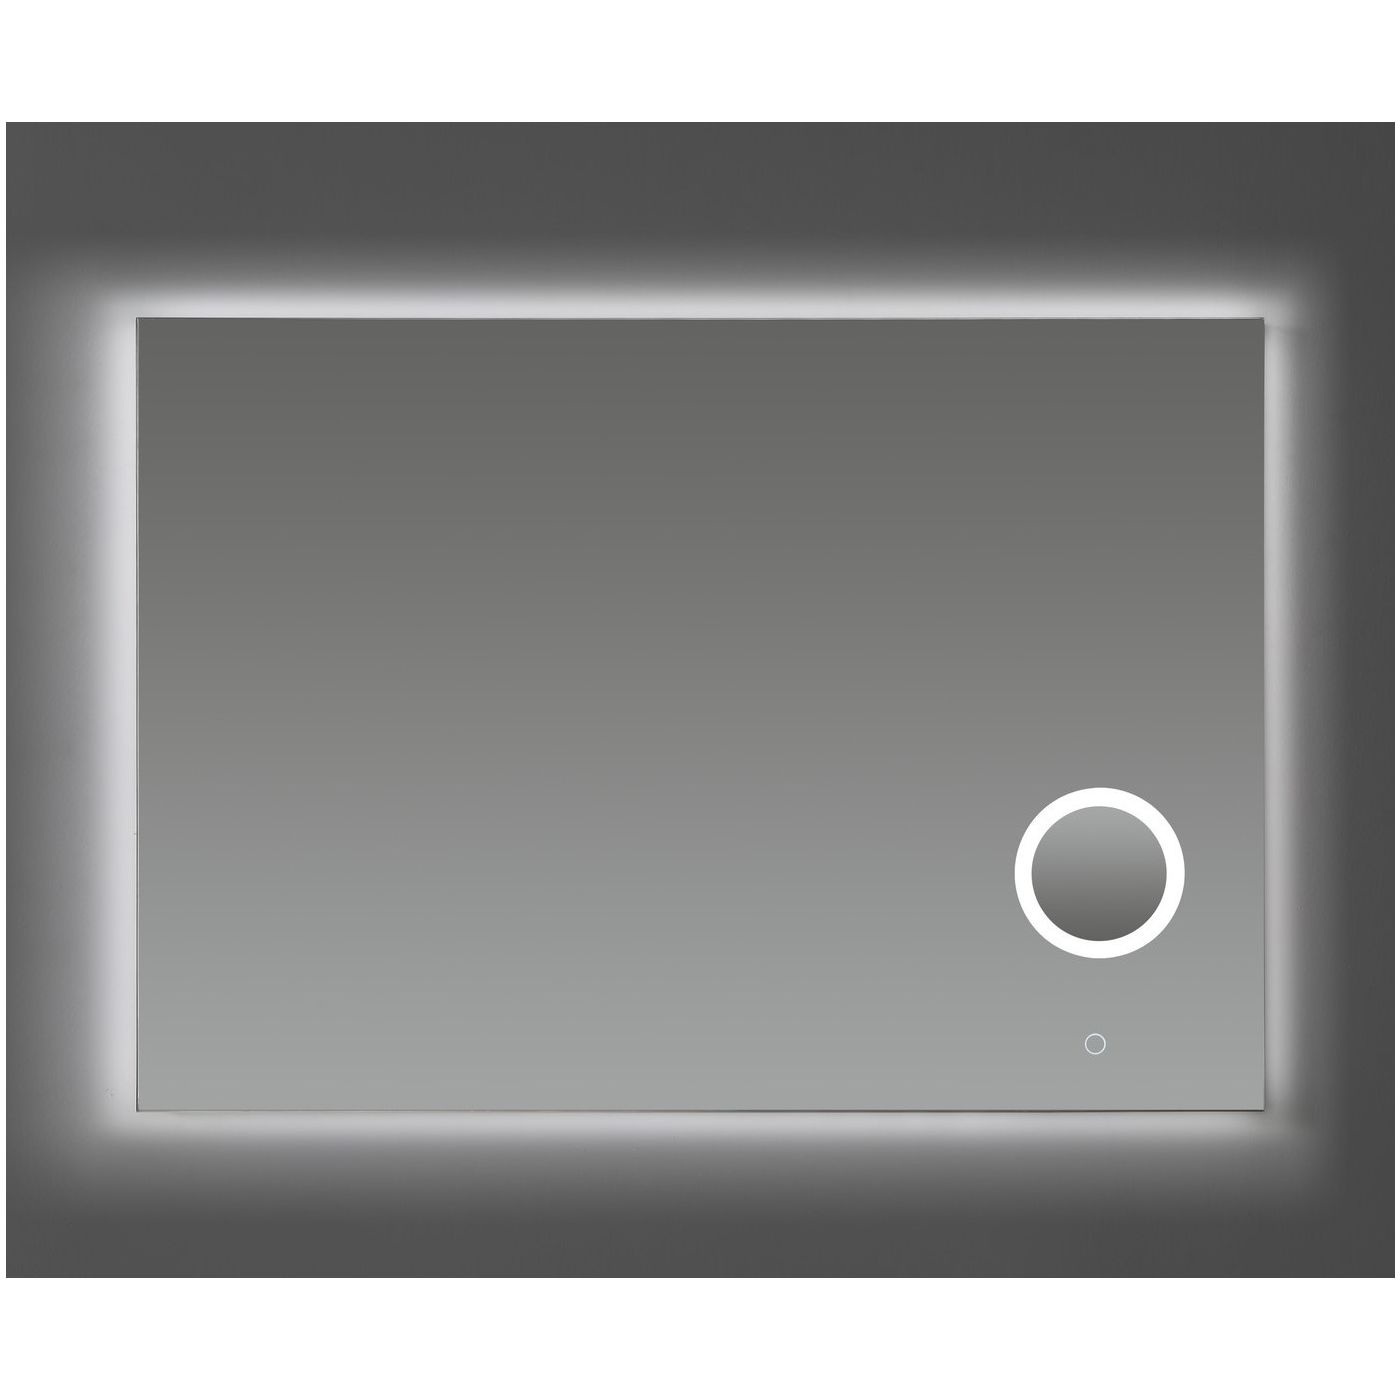 Neuer spiegel met scheerspiegel, verlichting en spiegelverwarming 100x70